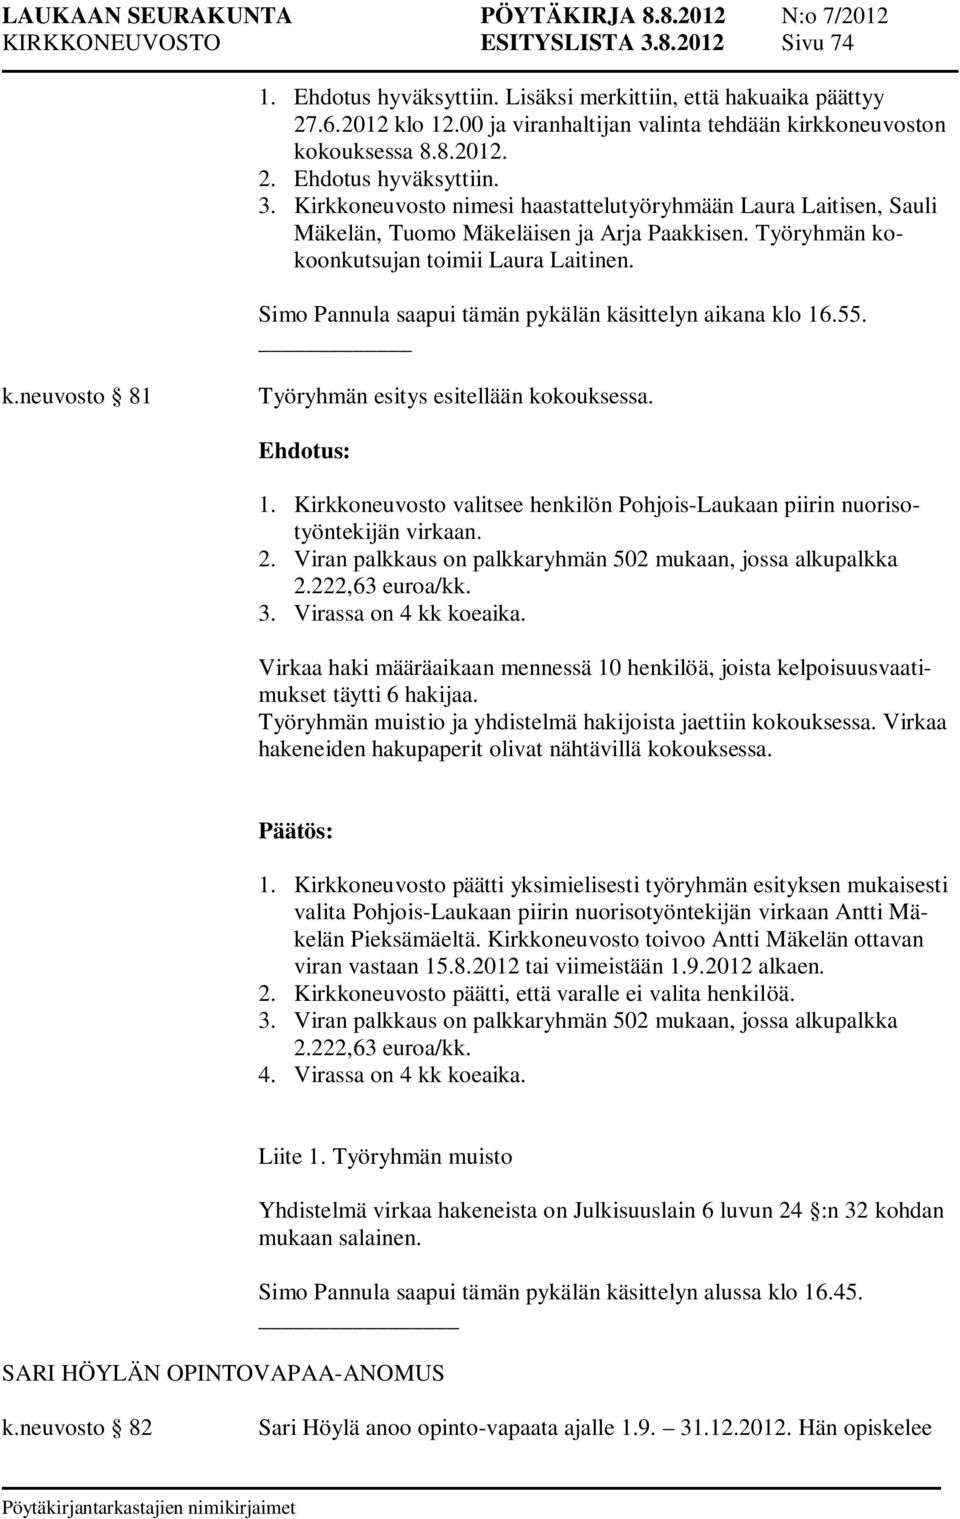 2. Viran palkkaus on palkkaryhmän 502 mukaan, jossa alkupalkka 2.222,63 euroa/kk. 3. Virassa on 4 kk koeaika.